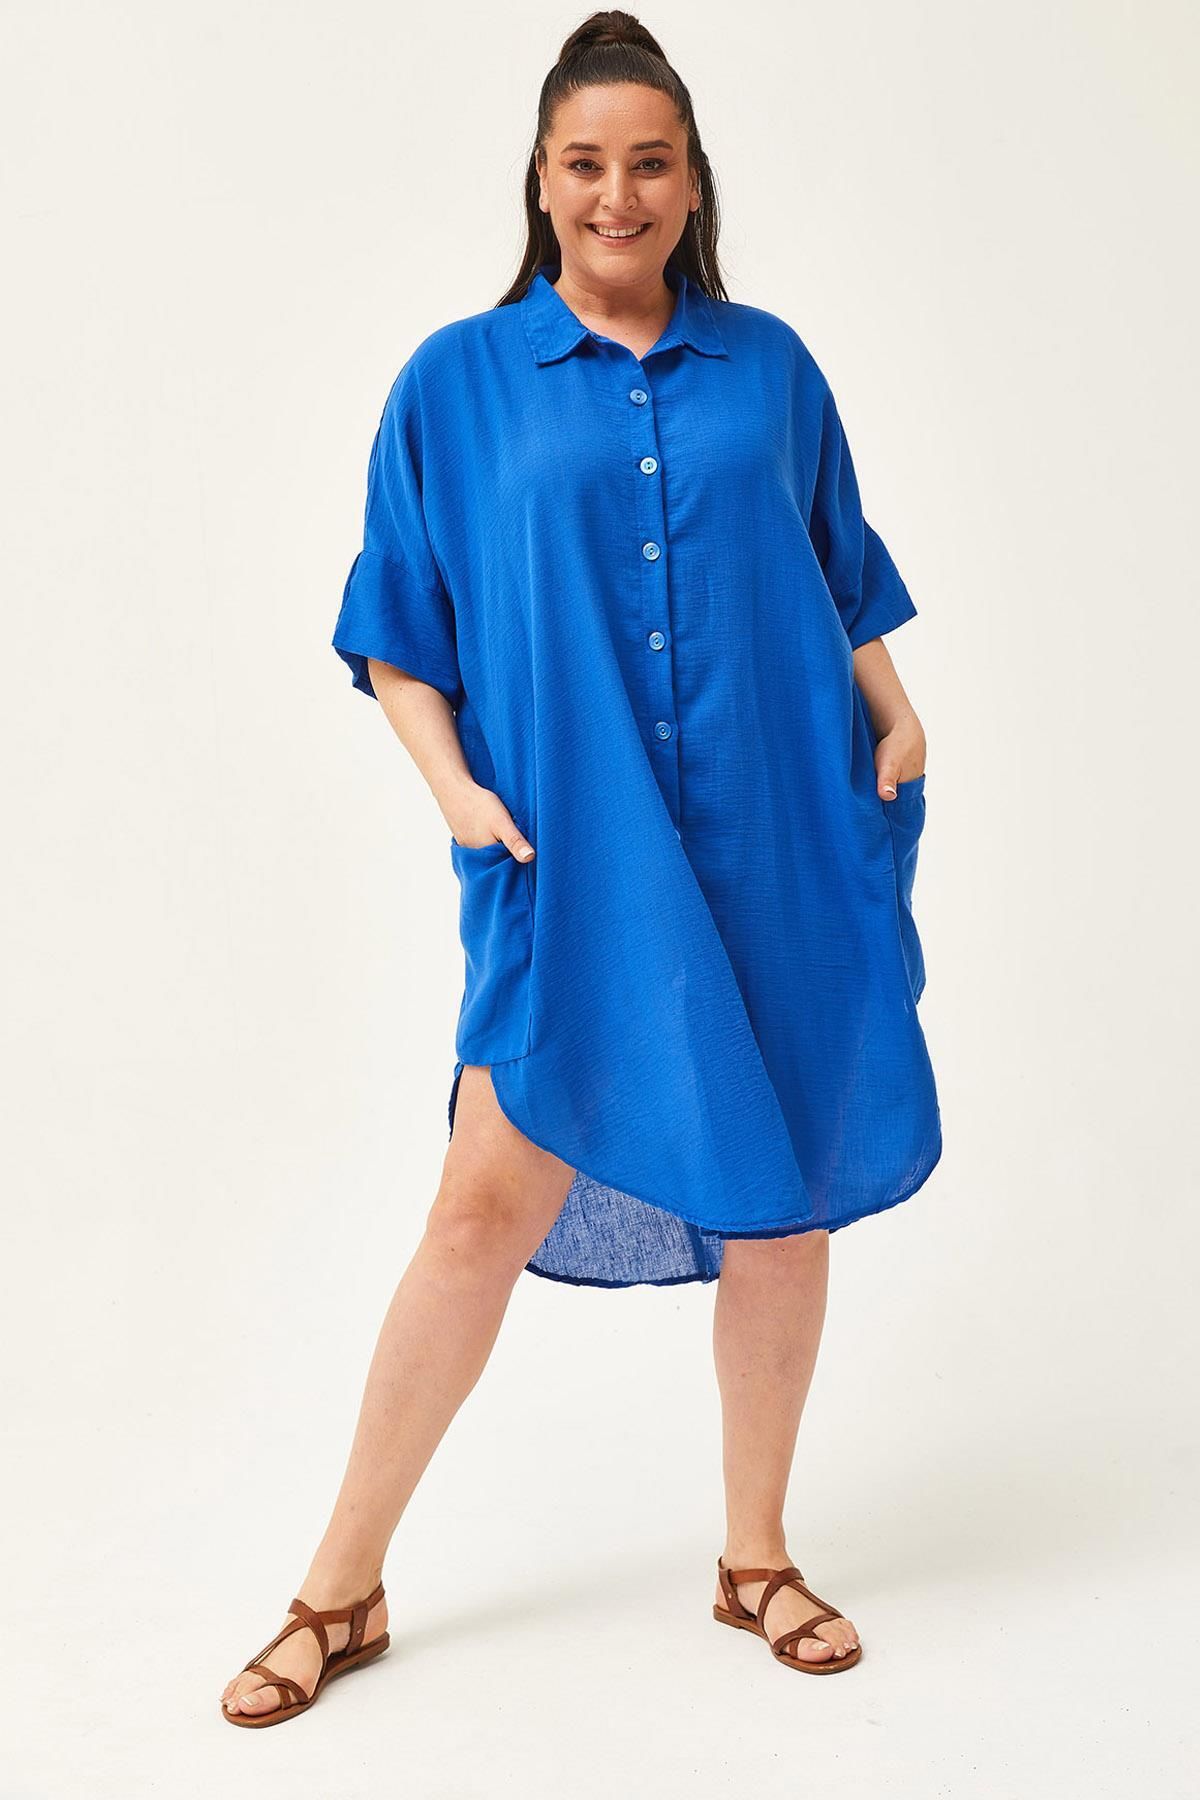 Ebsumu Kadın Büyük Beden Düşük Kol Ekstra Rahat Kalıp Keten Mavi Gömlek Elbise